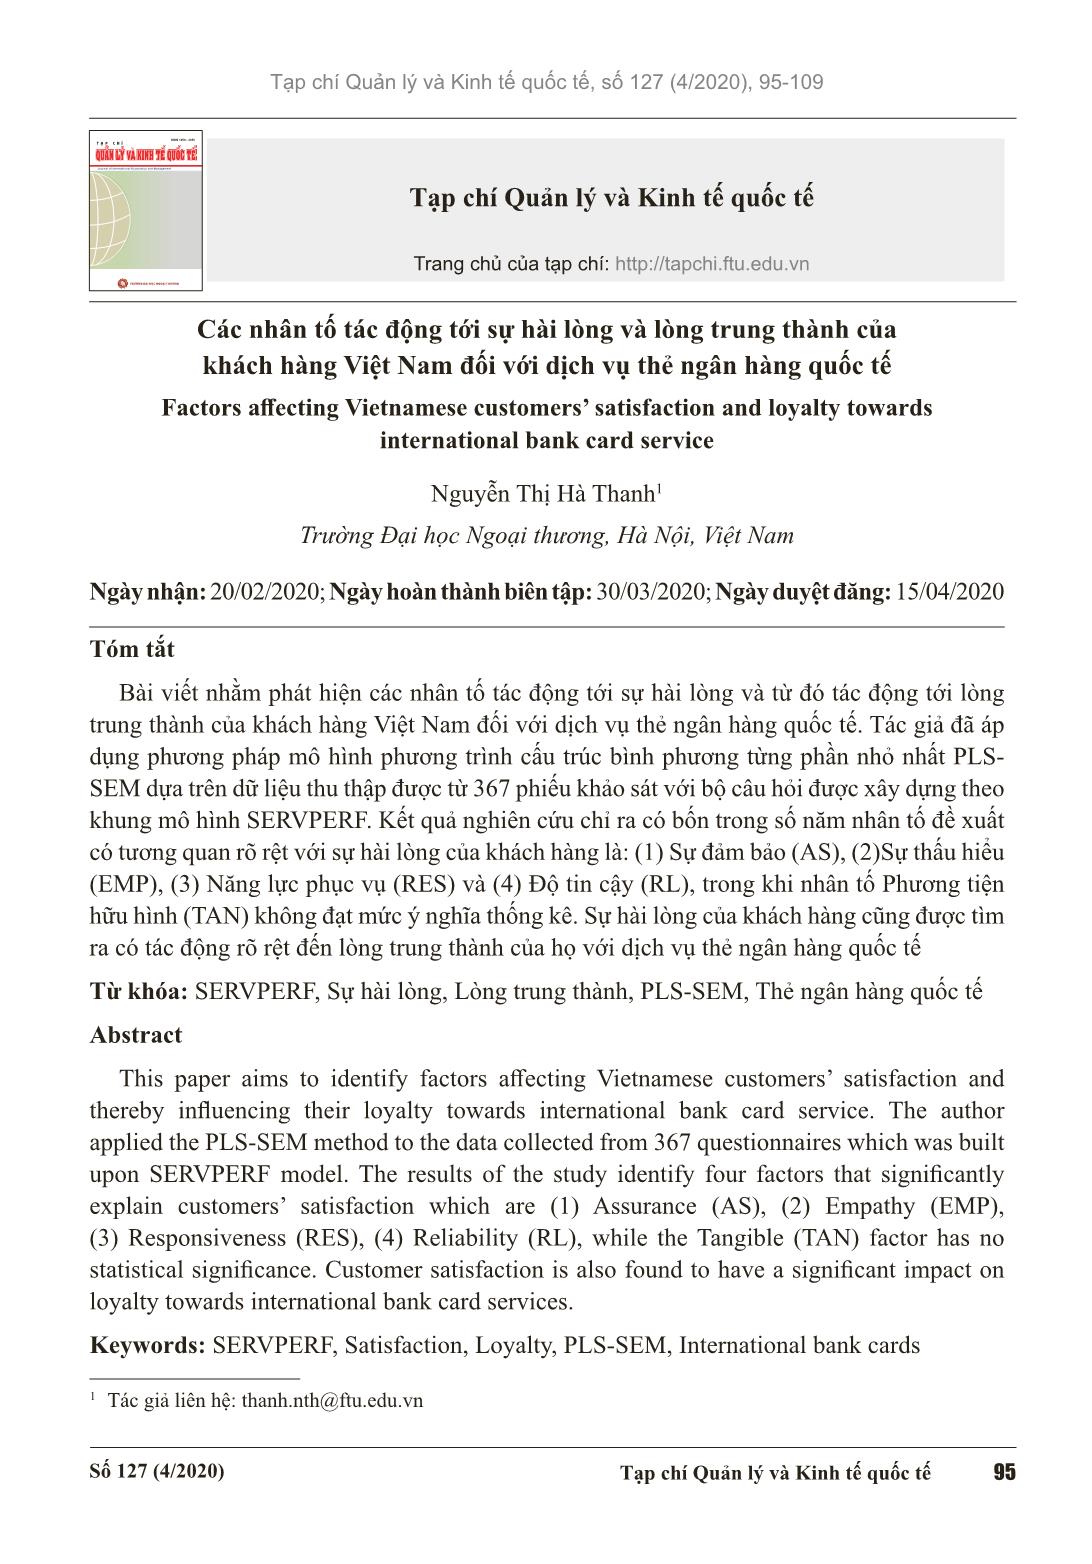 Các nhân tố tác động tới sự hài lòng và lòng trung thành của khách hàng Việt Nam đối với dịch vụ thẻ ngân hàng quốc tế trang 1